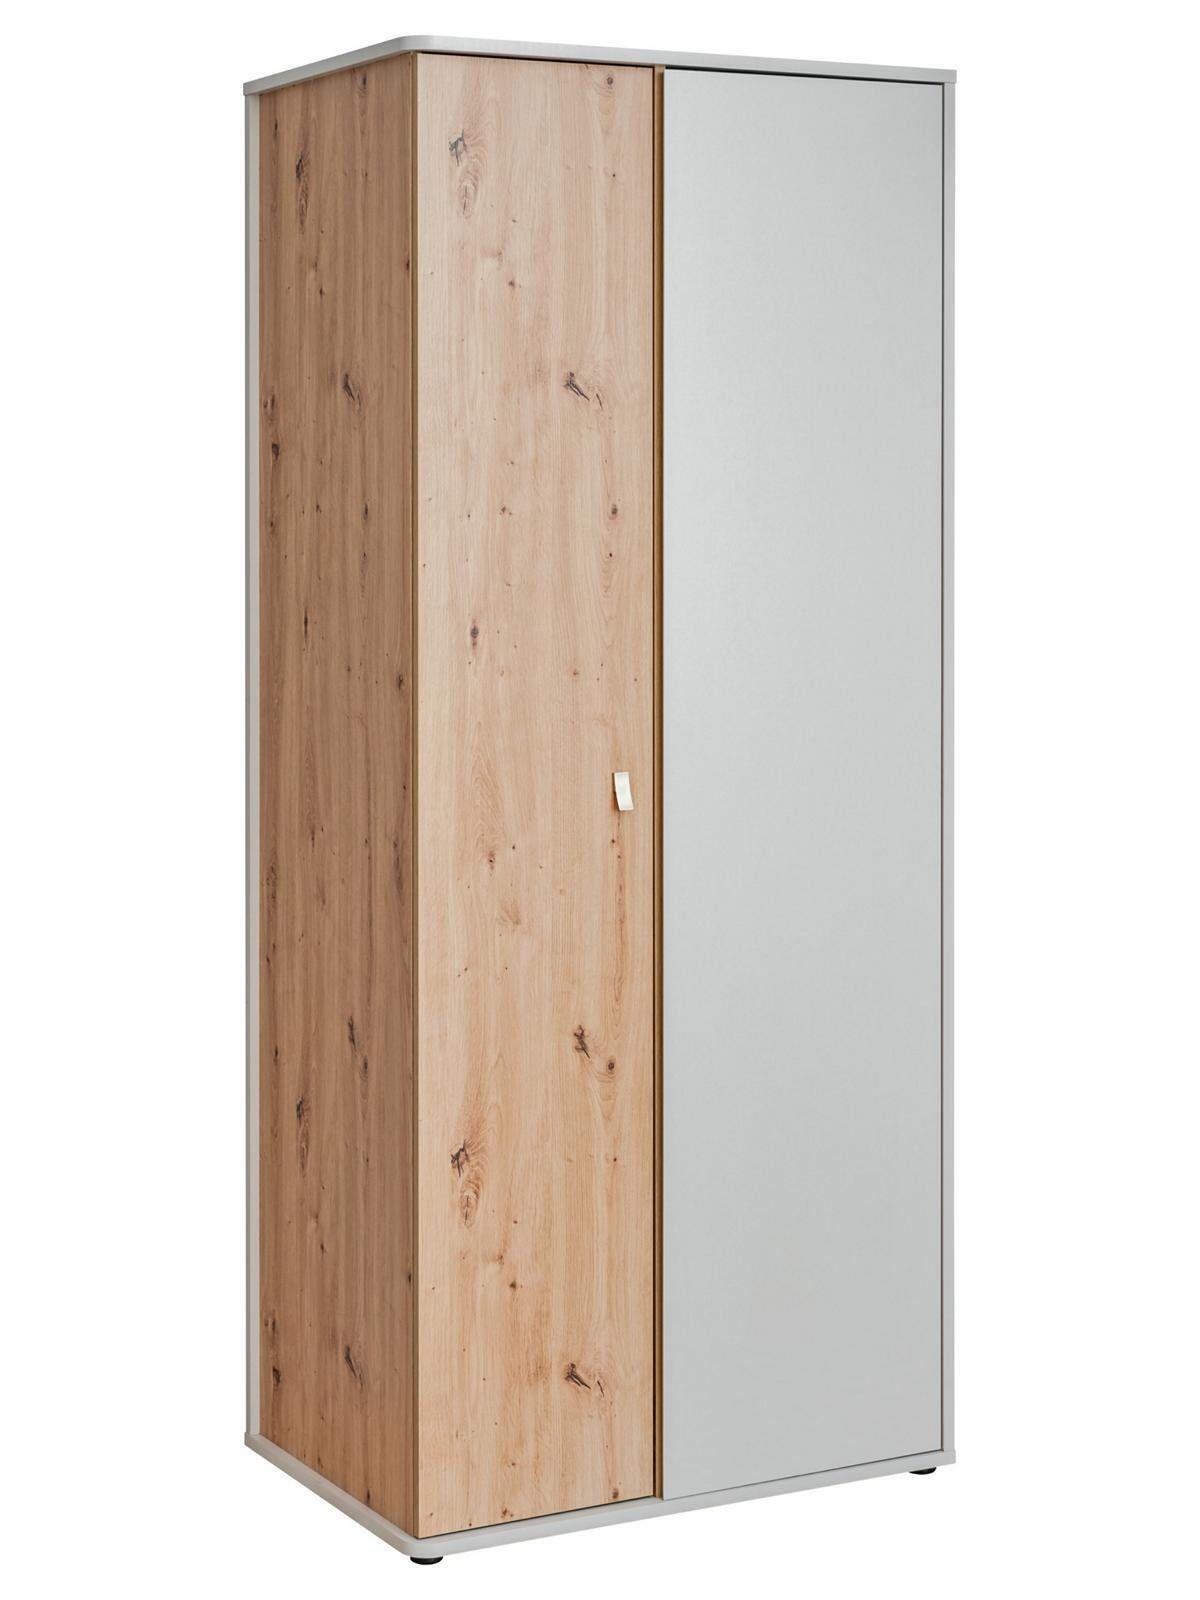 Made JVmoebel Kleiderschrank Kleiderschrank Moderne Designer Luxus Möbel Neu in Holz Europa